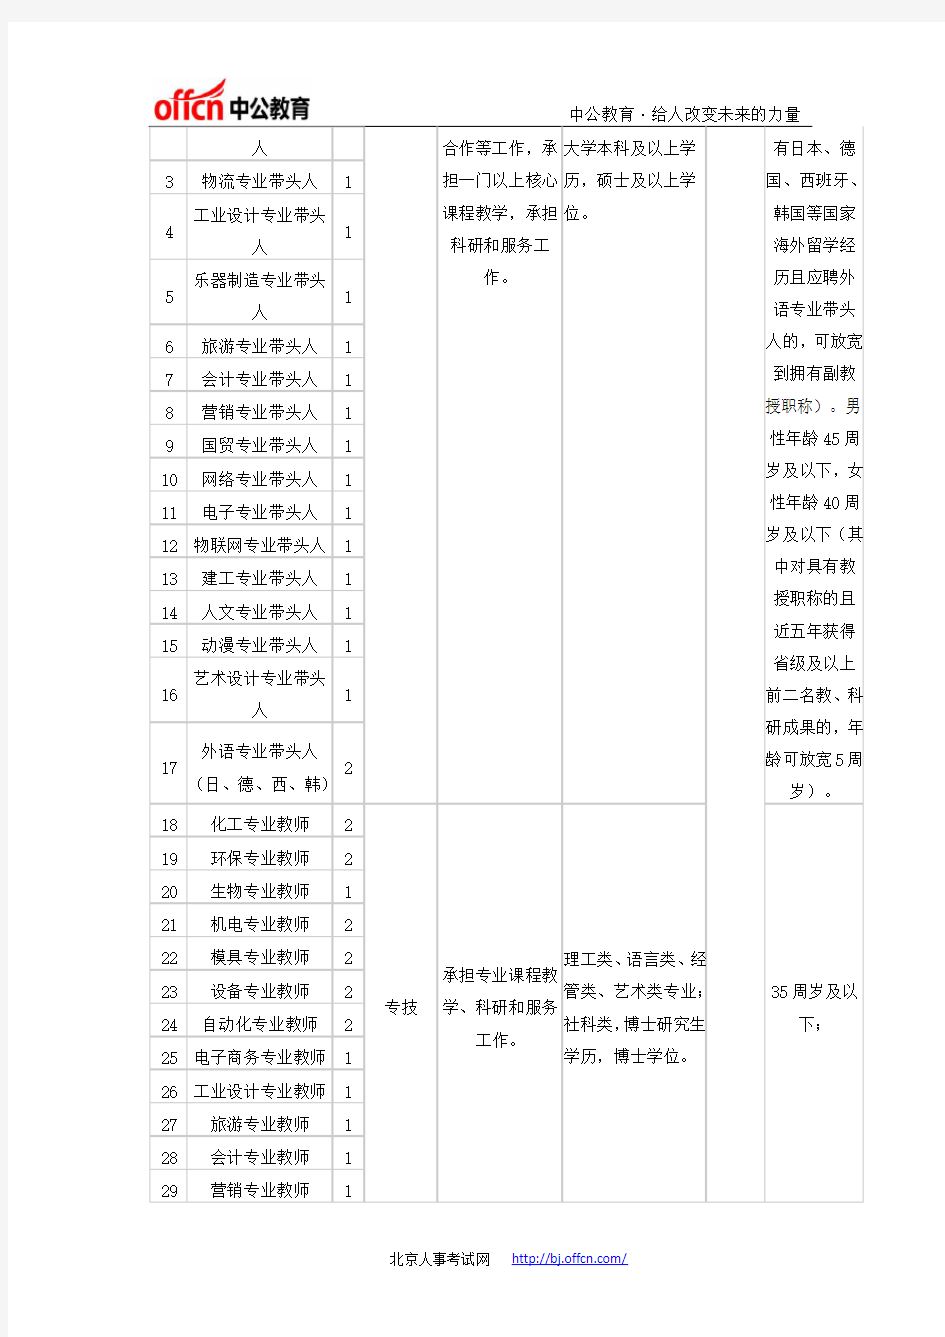 浙江事业单位招聘[宁波]：2014年宁波职业技术学院公开招聘高层次人才55名公告